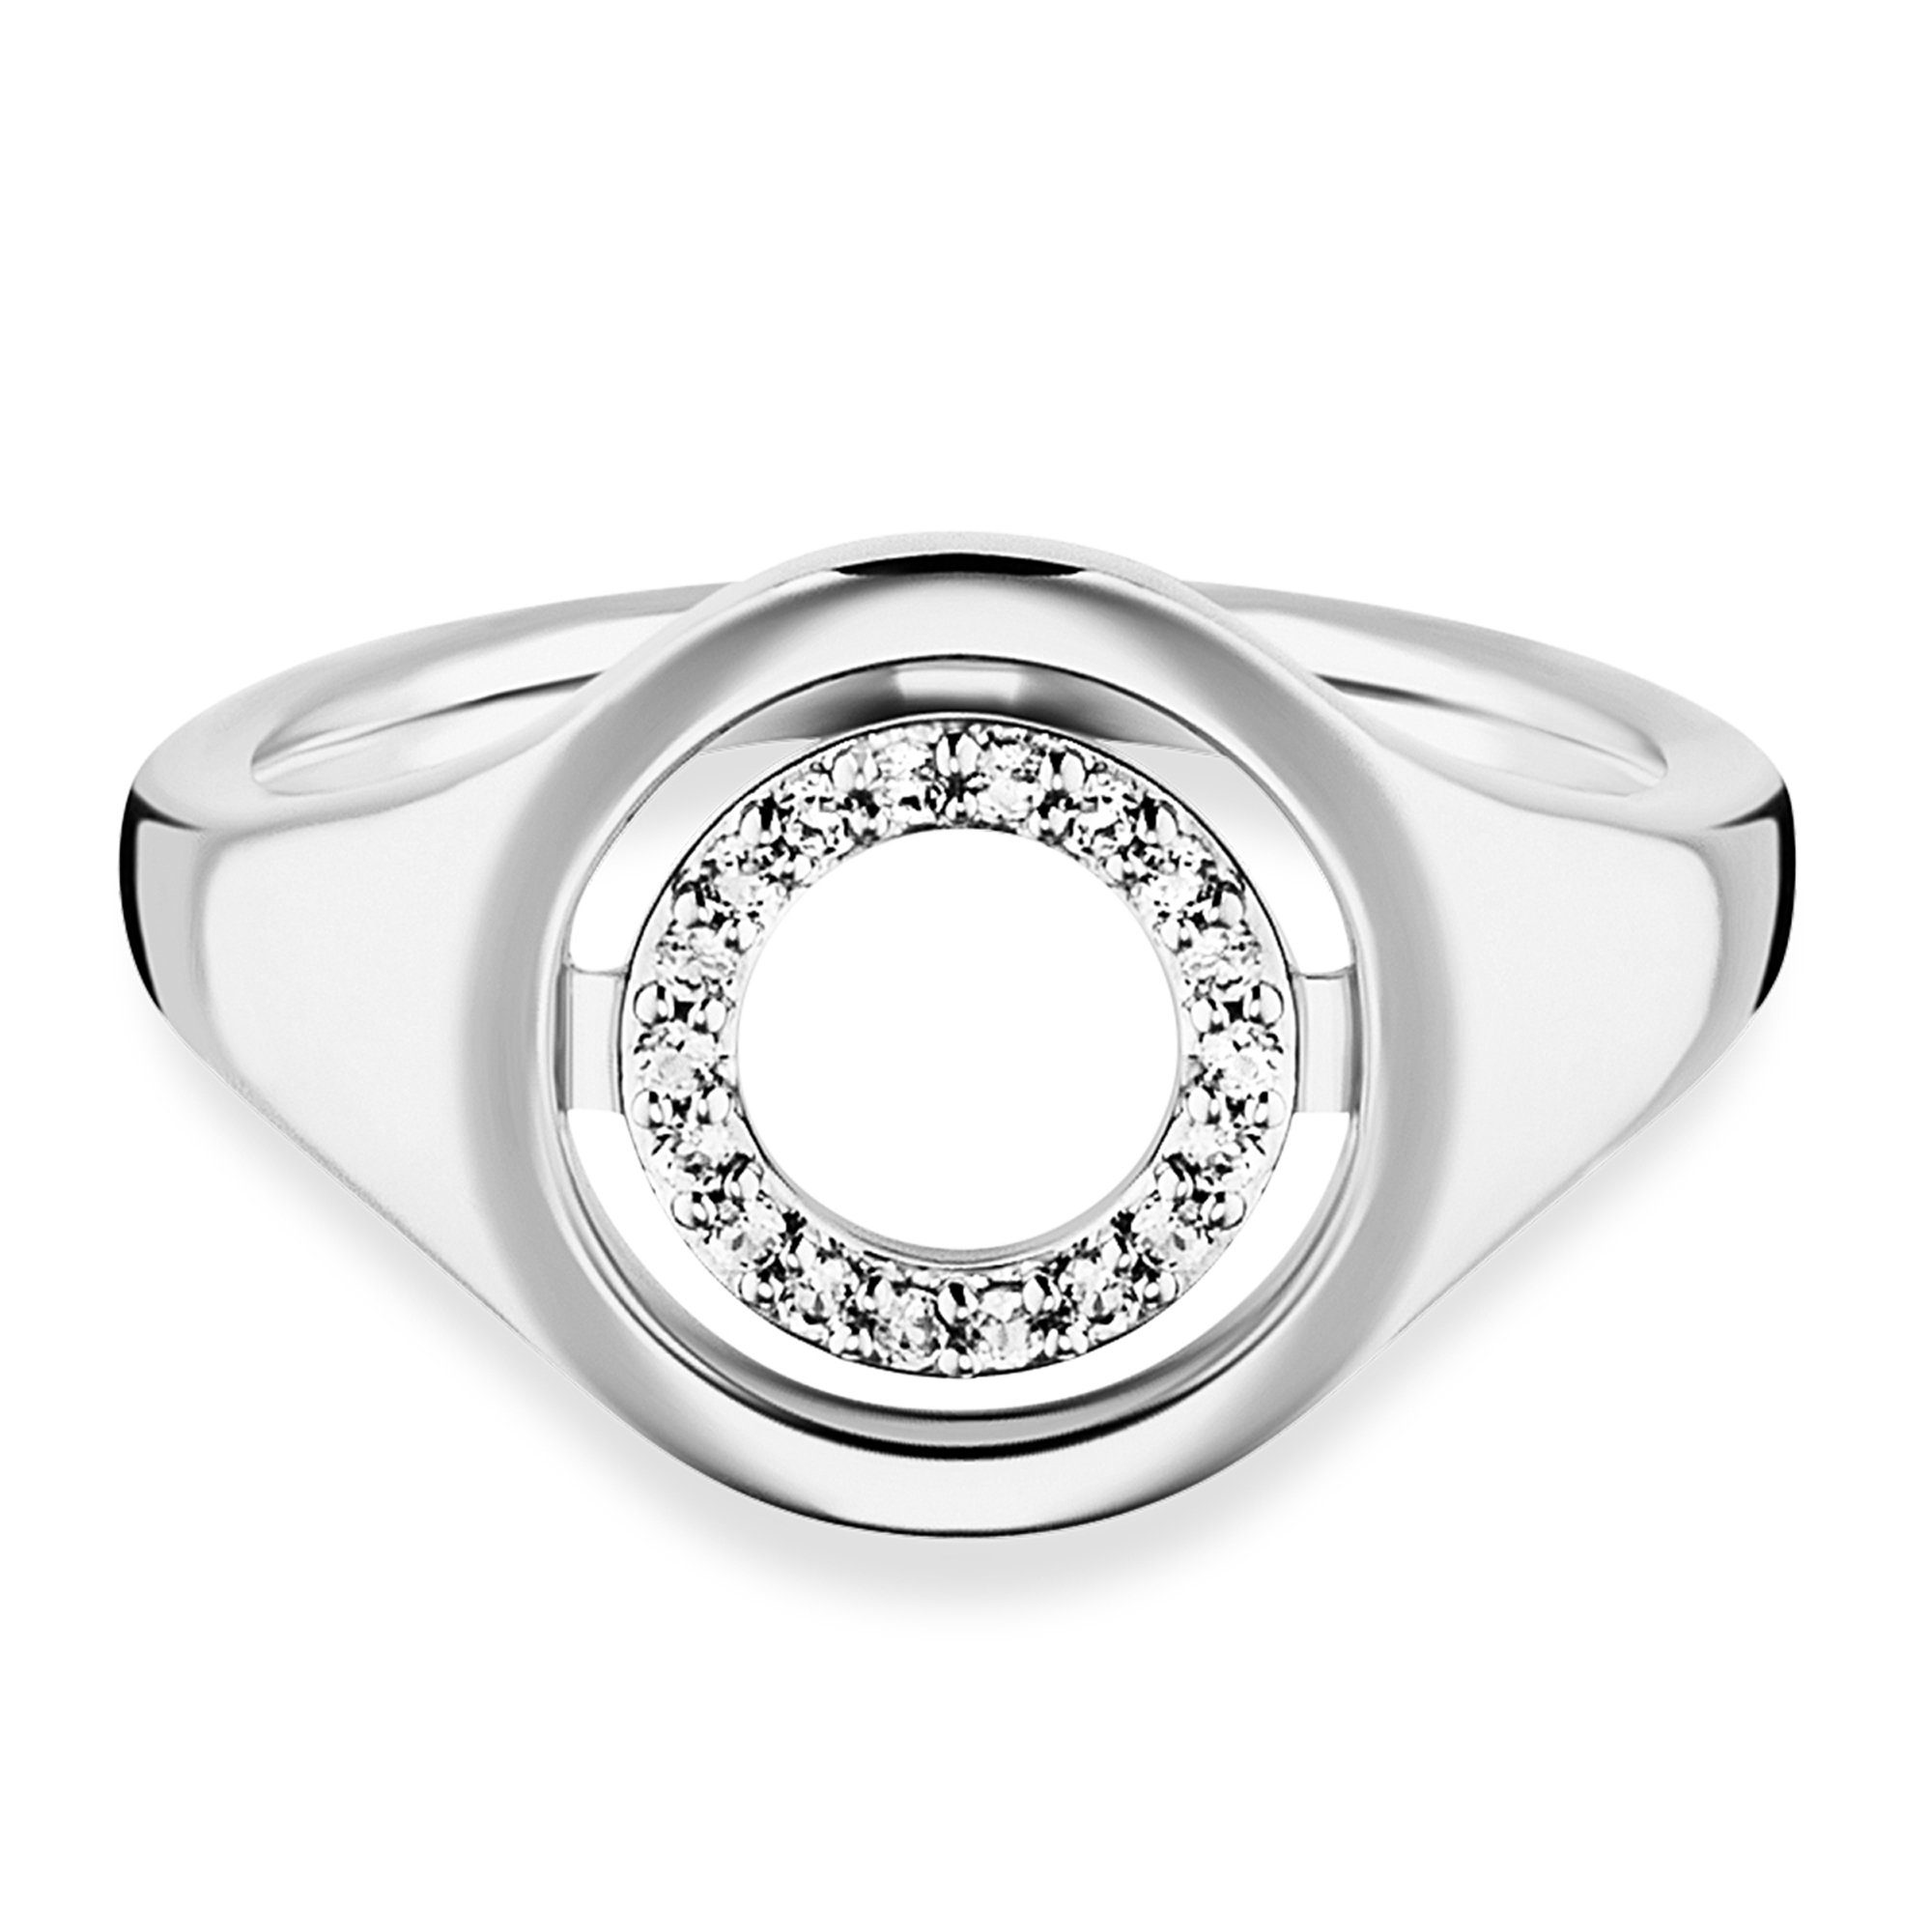 CAÏ Fingerring 925/- Sterling Silber rhodiniert Topas | Silberringe